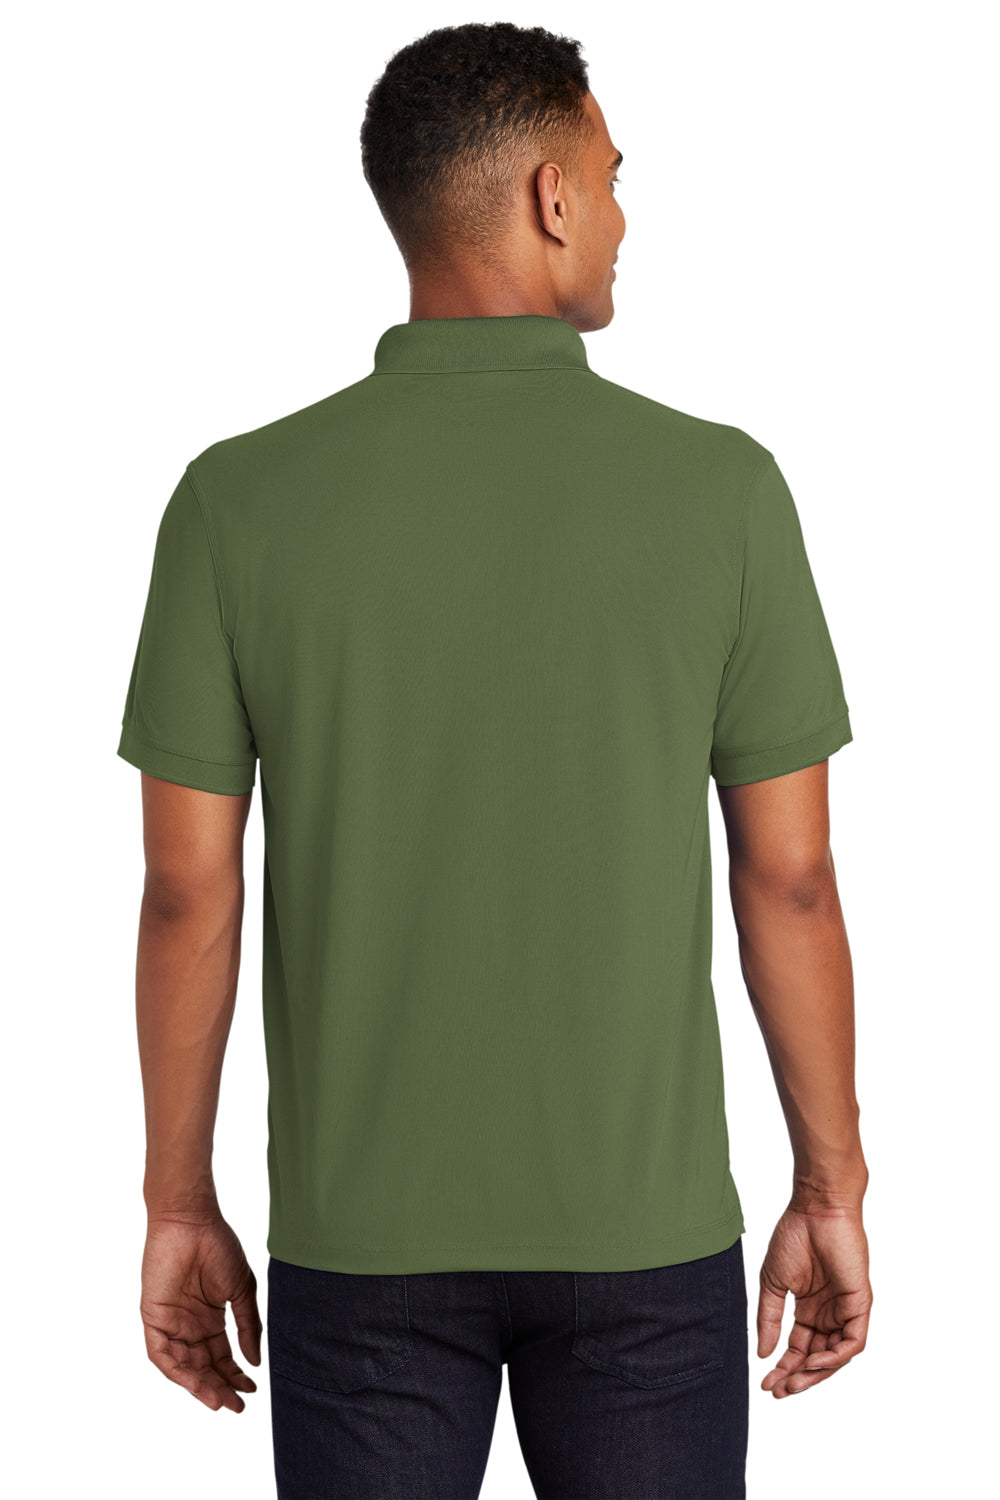 Ogio OG101 Mens Caliber 2.0 Moisture Wicking Short Sleeve Polo Shirt Grit Green Back